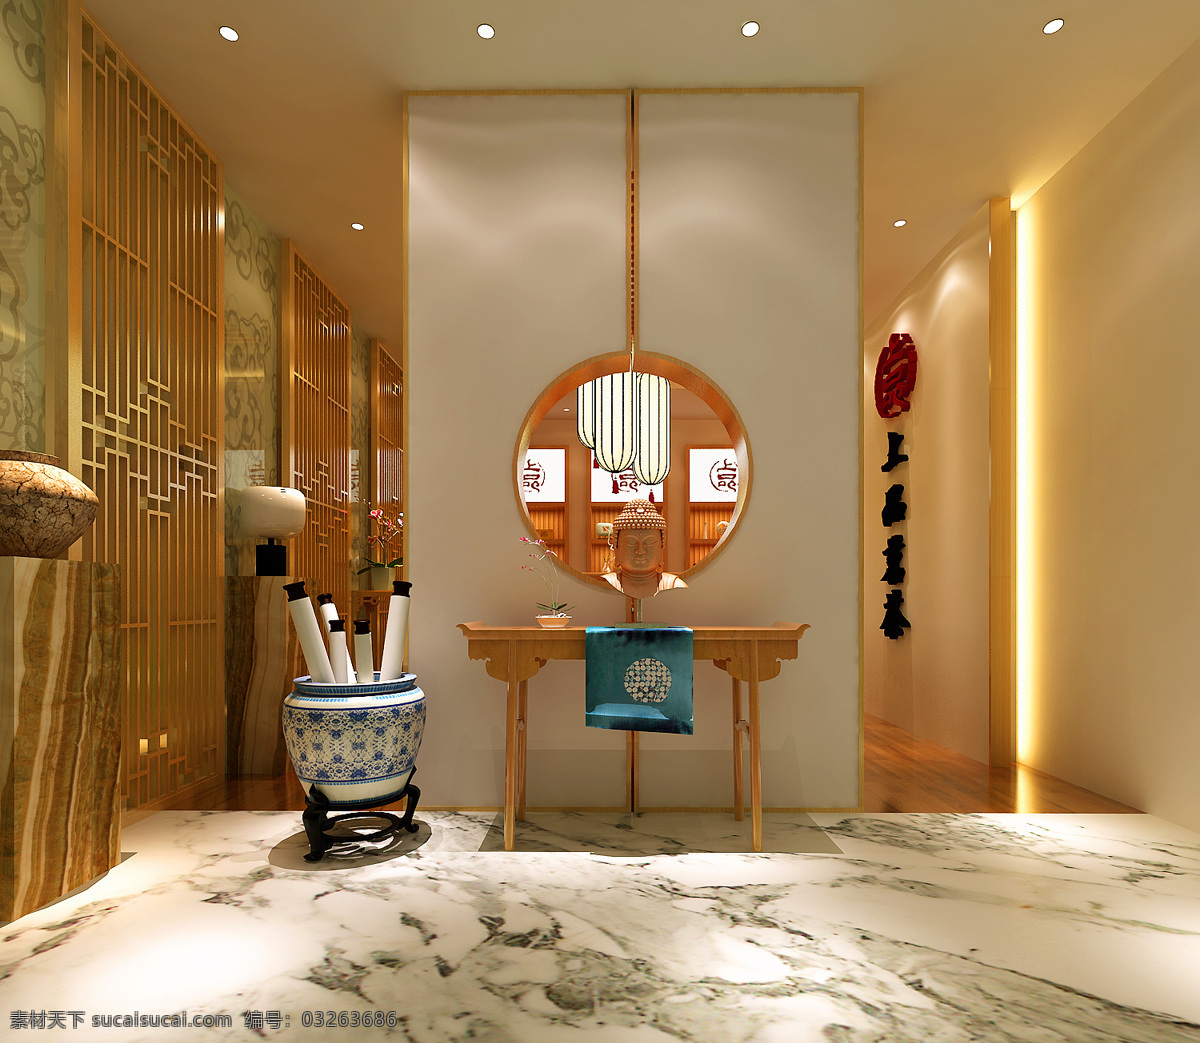 新 中式 茶室 效果图 新中式 室内设计 环境设计